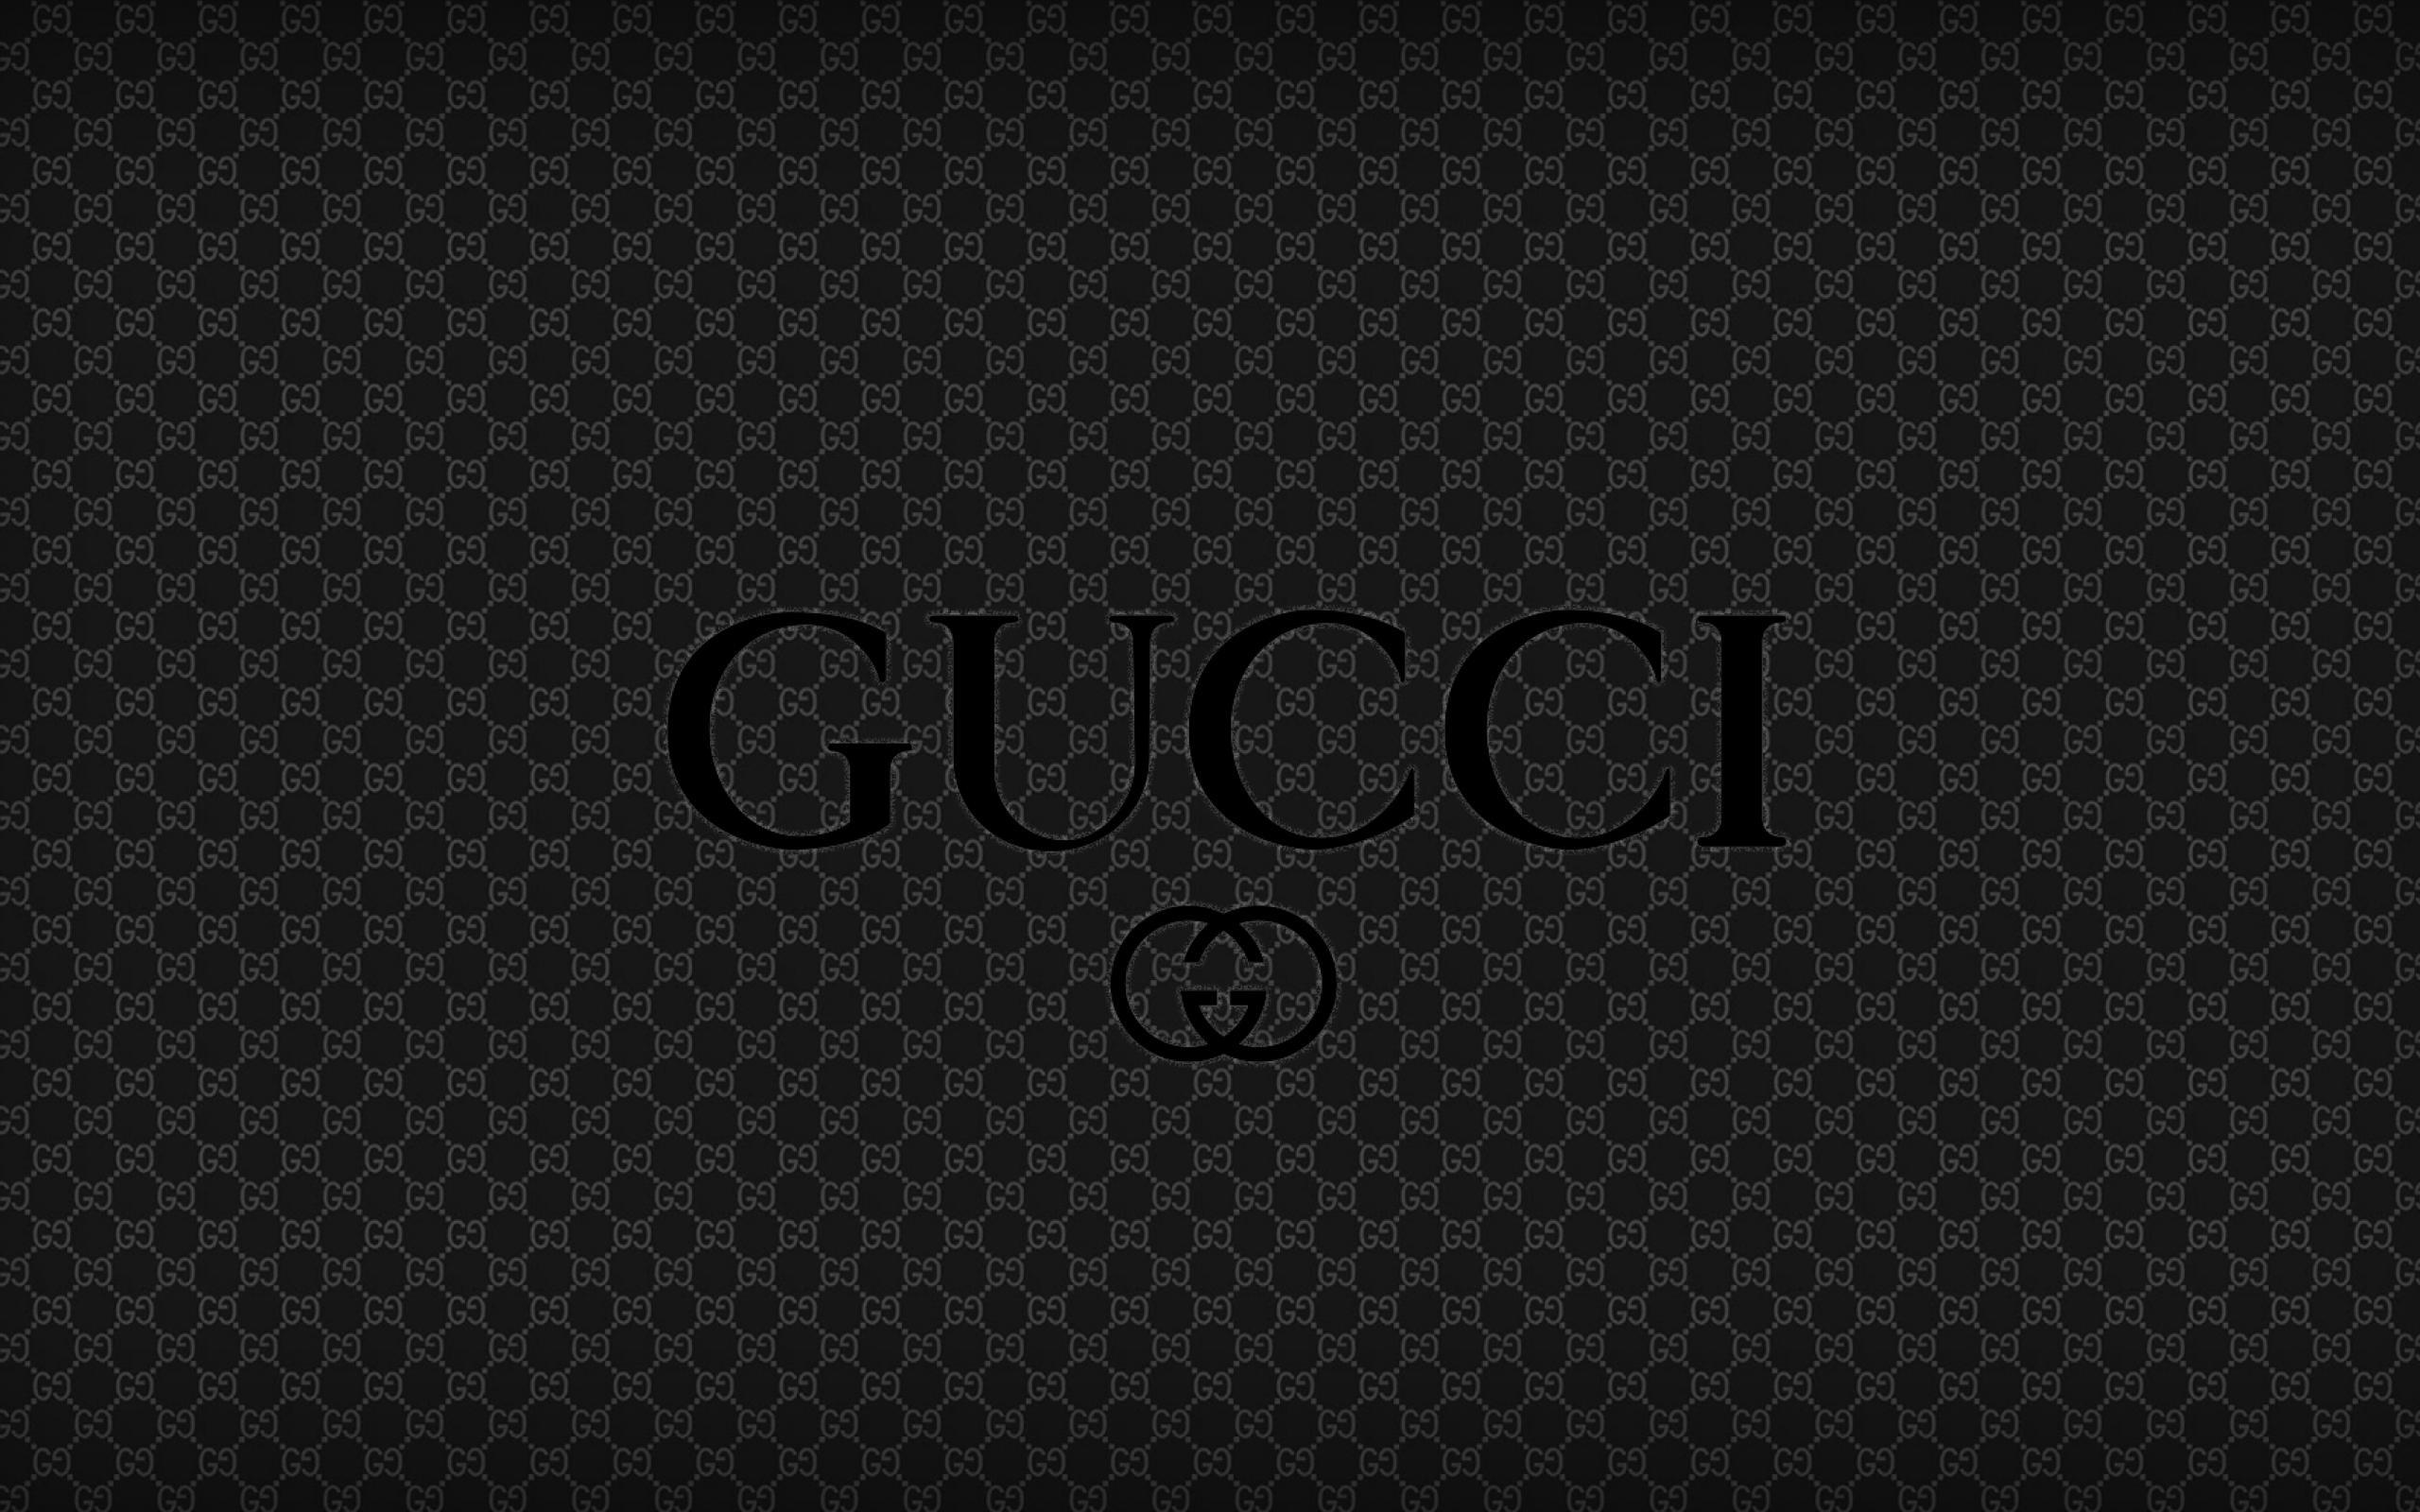 Ảnh nền Gucci đen giòn tuyệt đẹp